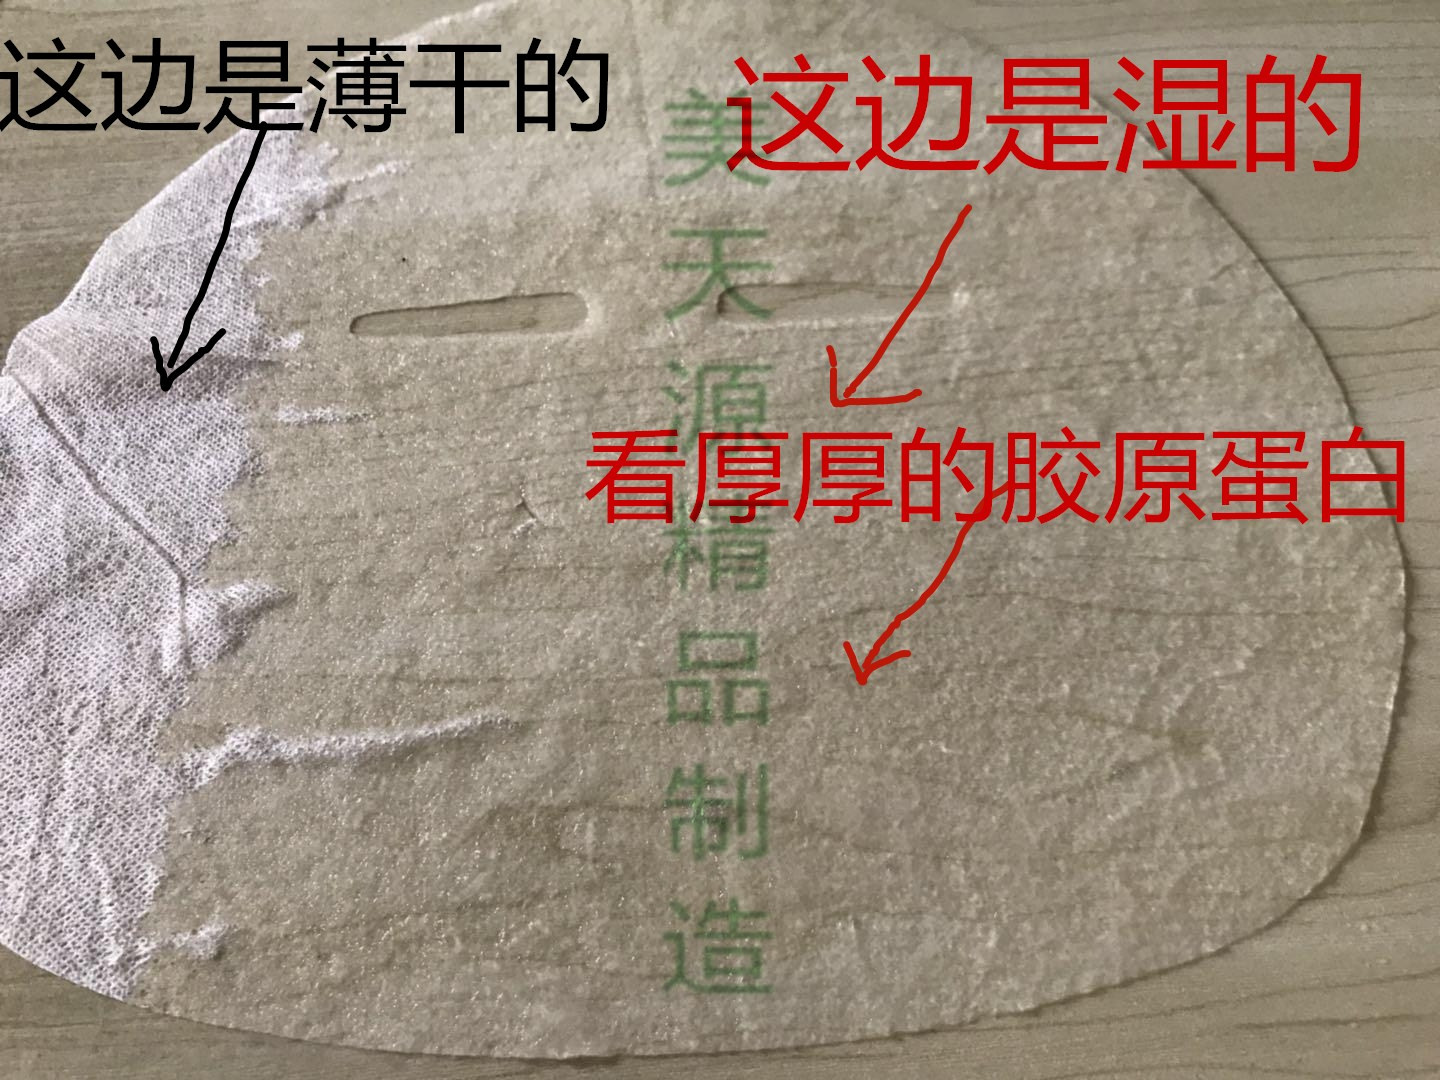 壳聚糖水溶性面膜纸 韩国进口优质胶原蛋白质面膜布